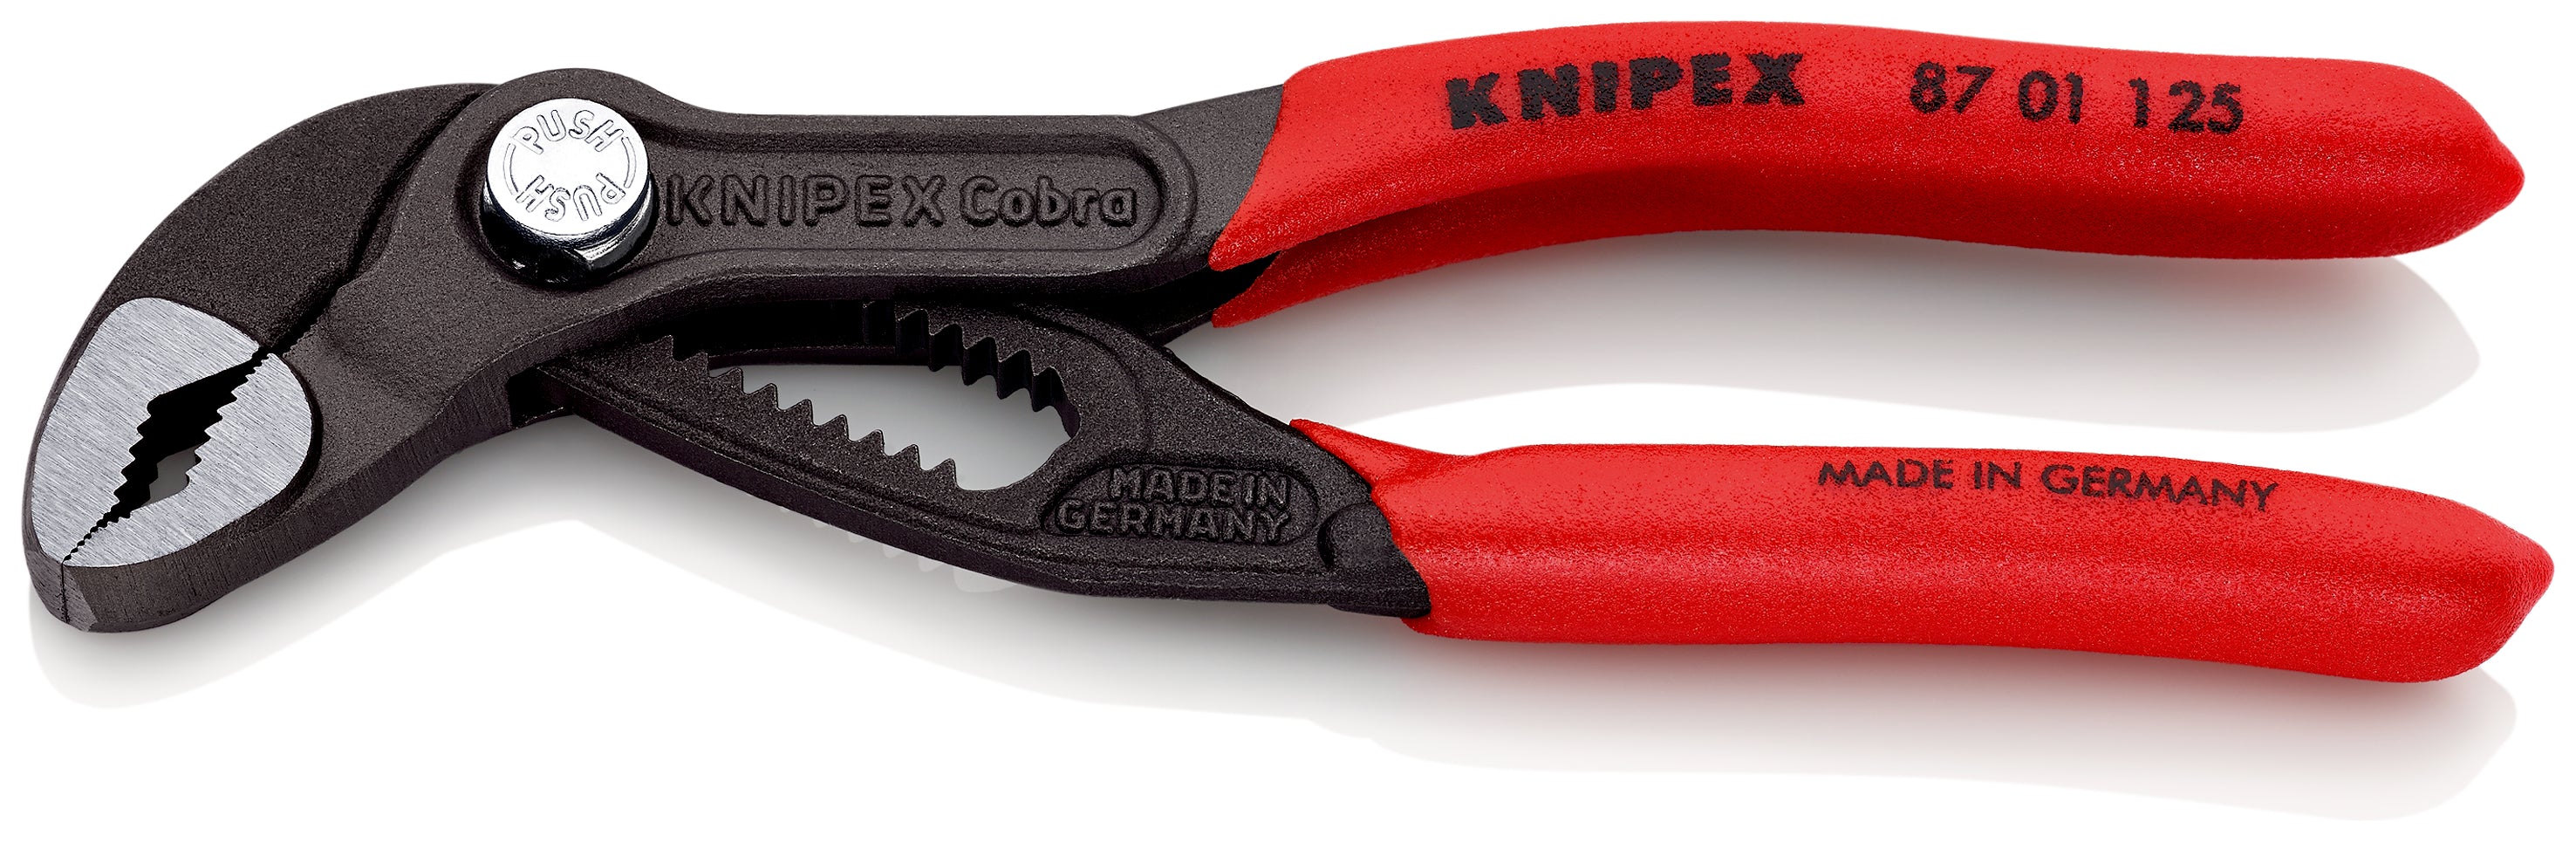 KNIPEX 87 01 125 SB Cobra© Pinza de extensión Hightech recubiertos de plástico antideslizante acabado pavonado 125 mm